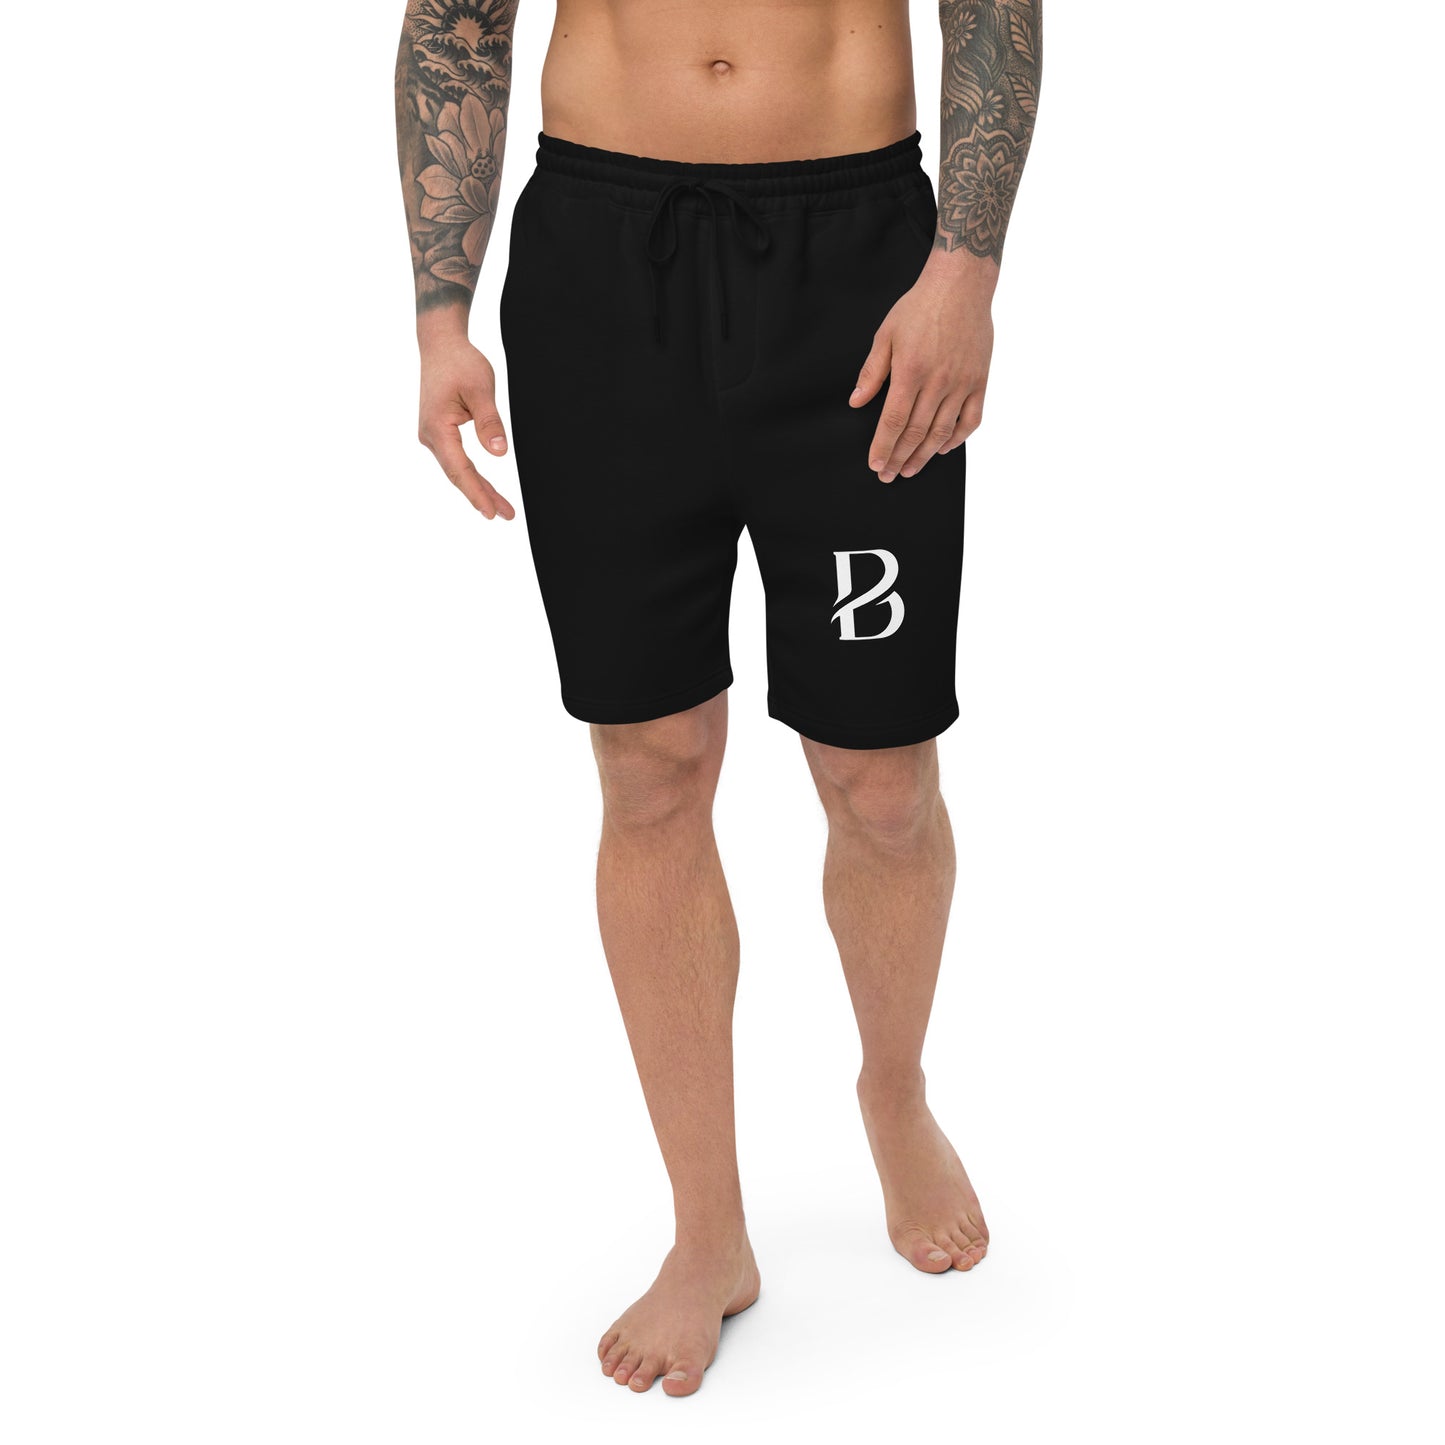 White Logo Born 2 Move "B" Men's Fleece Shorts